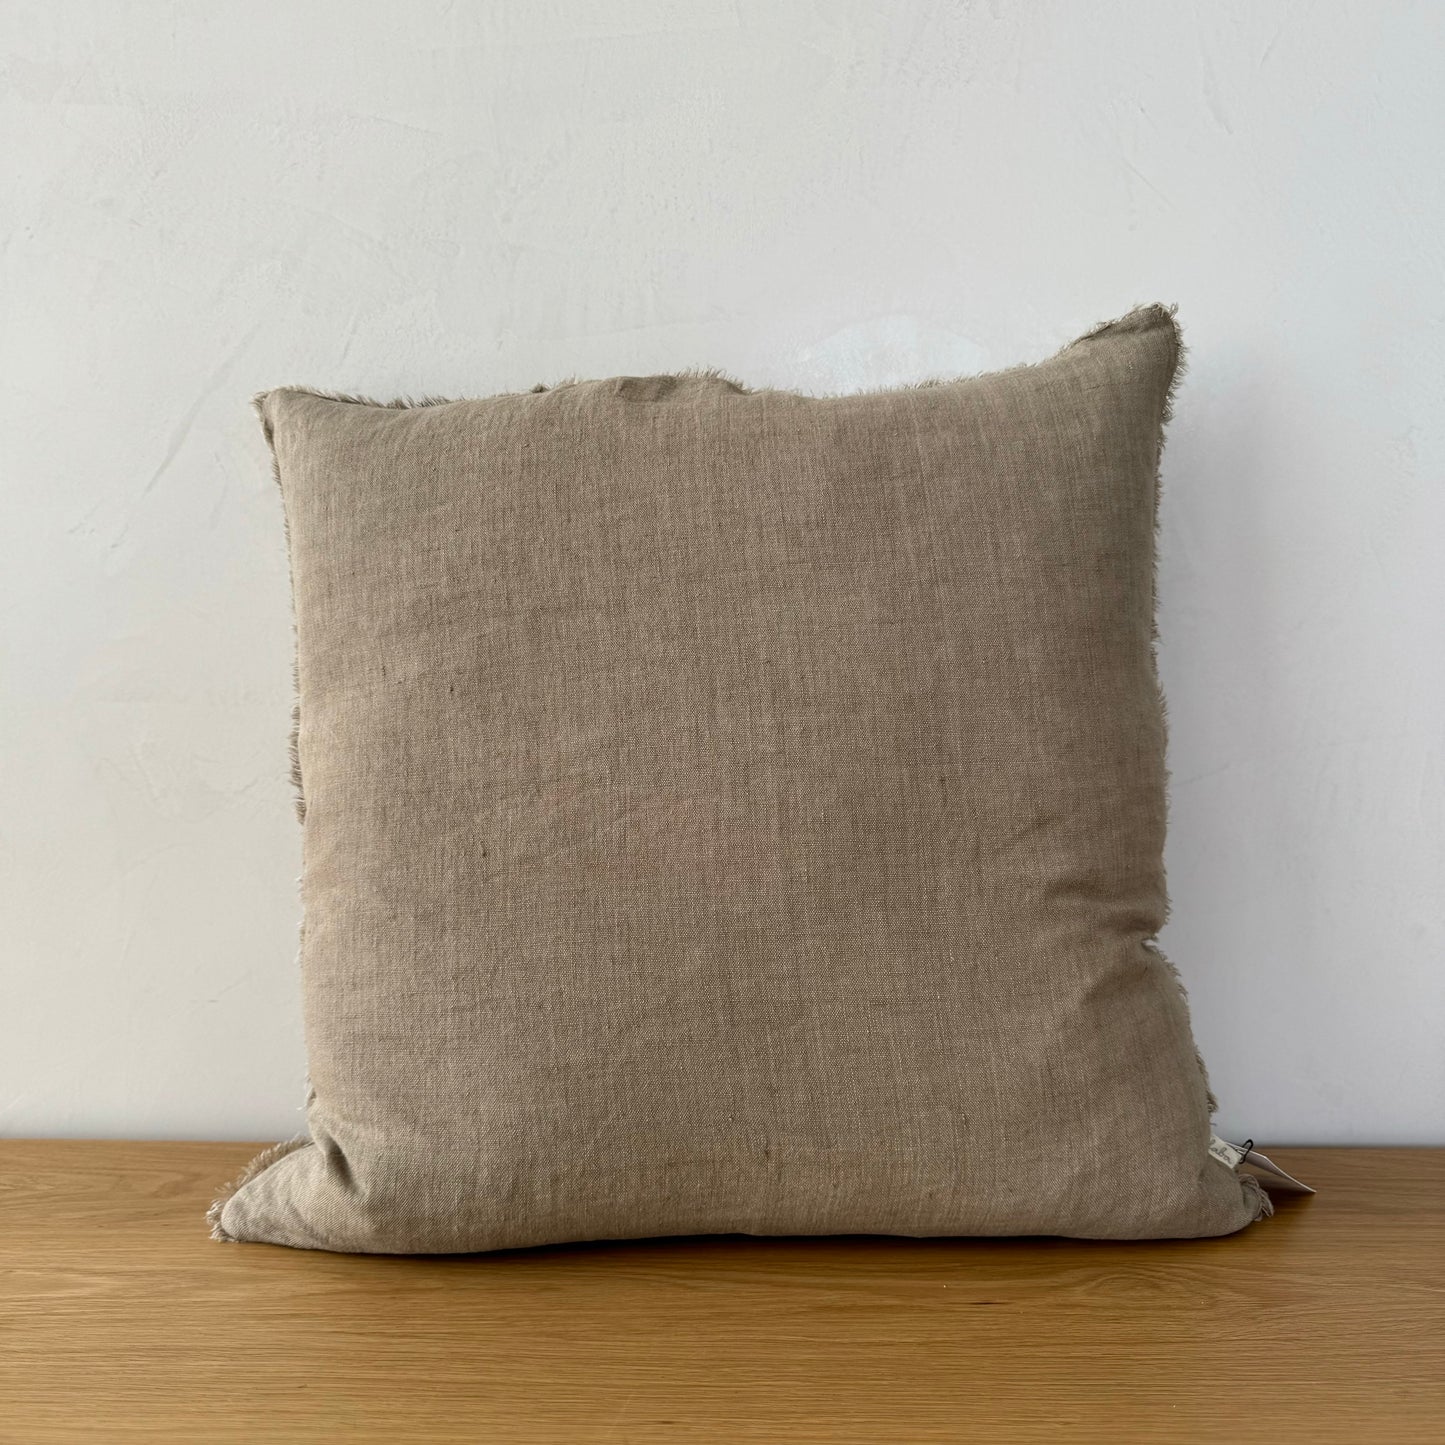 Sand Linen Pillow Cover - 24" x 24"